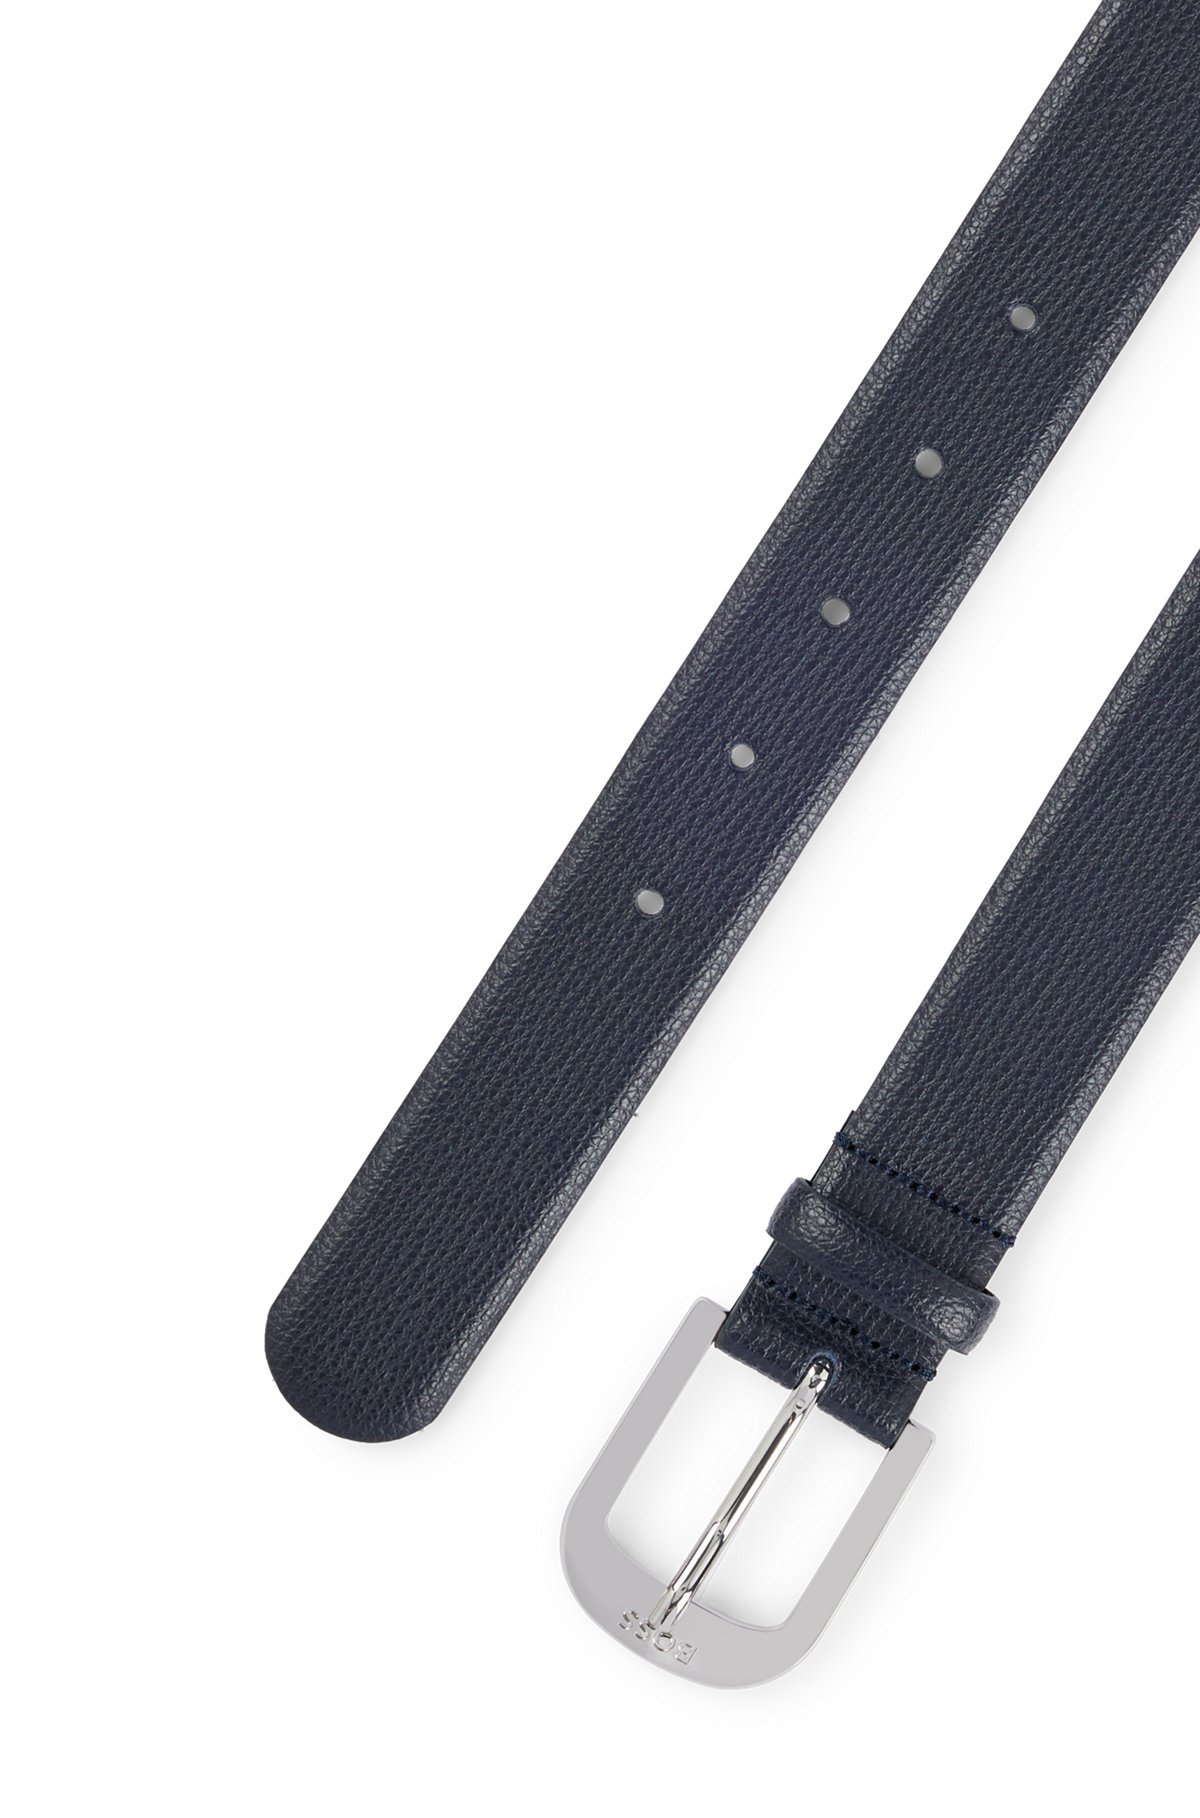 BOSS - In Italien gefertigter Gürtel aus genarbtem Leder mit Logo-Schließe | Anzuggürtel